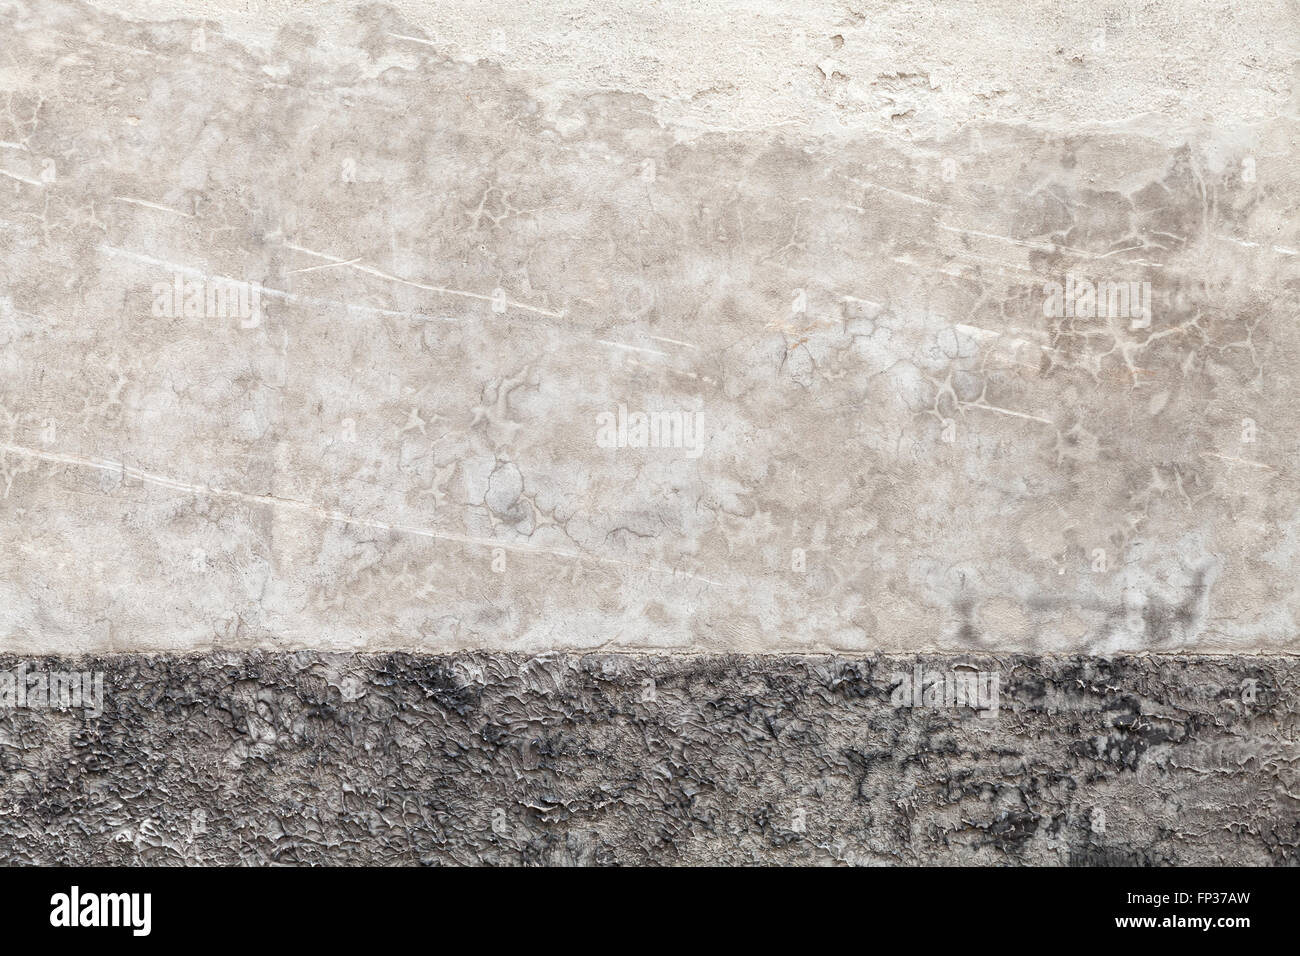 Gris oscuro sucio capeado muro de hormigón, fondo textura fotográfica Foto de stock